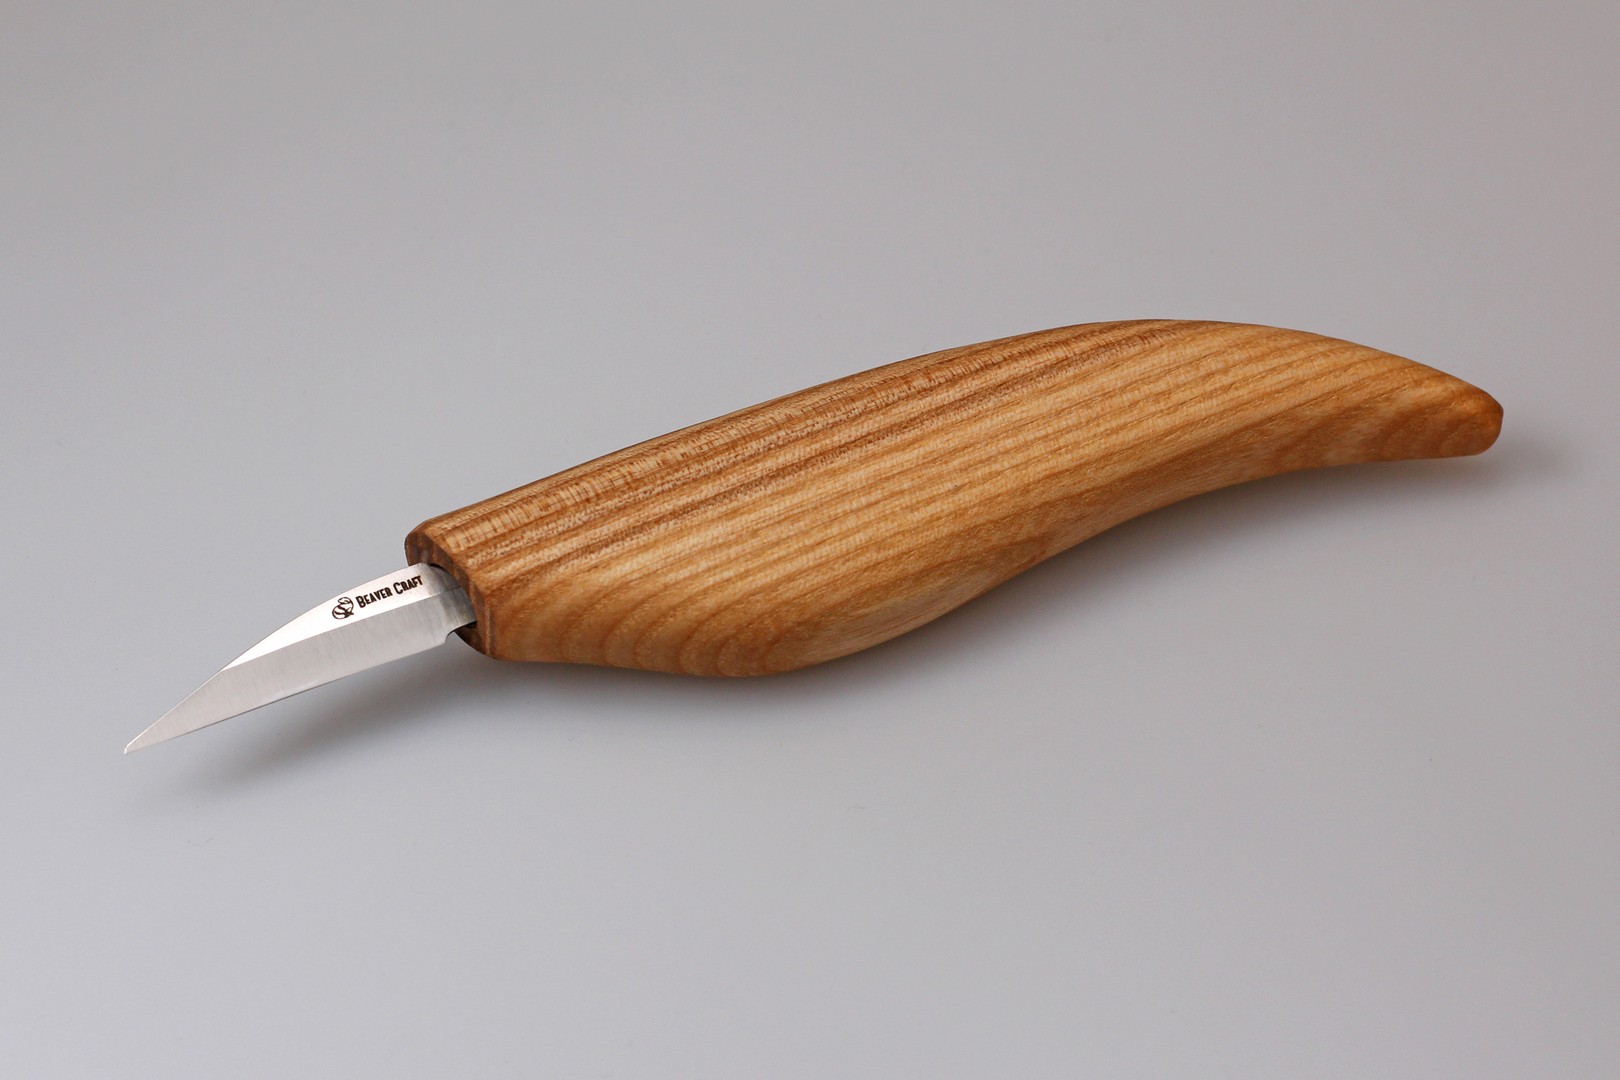 BeaverCraft C15 - Detail Wood Carving Knife fafaragó kés